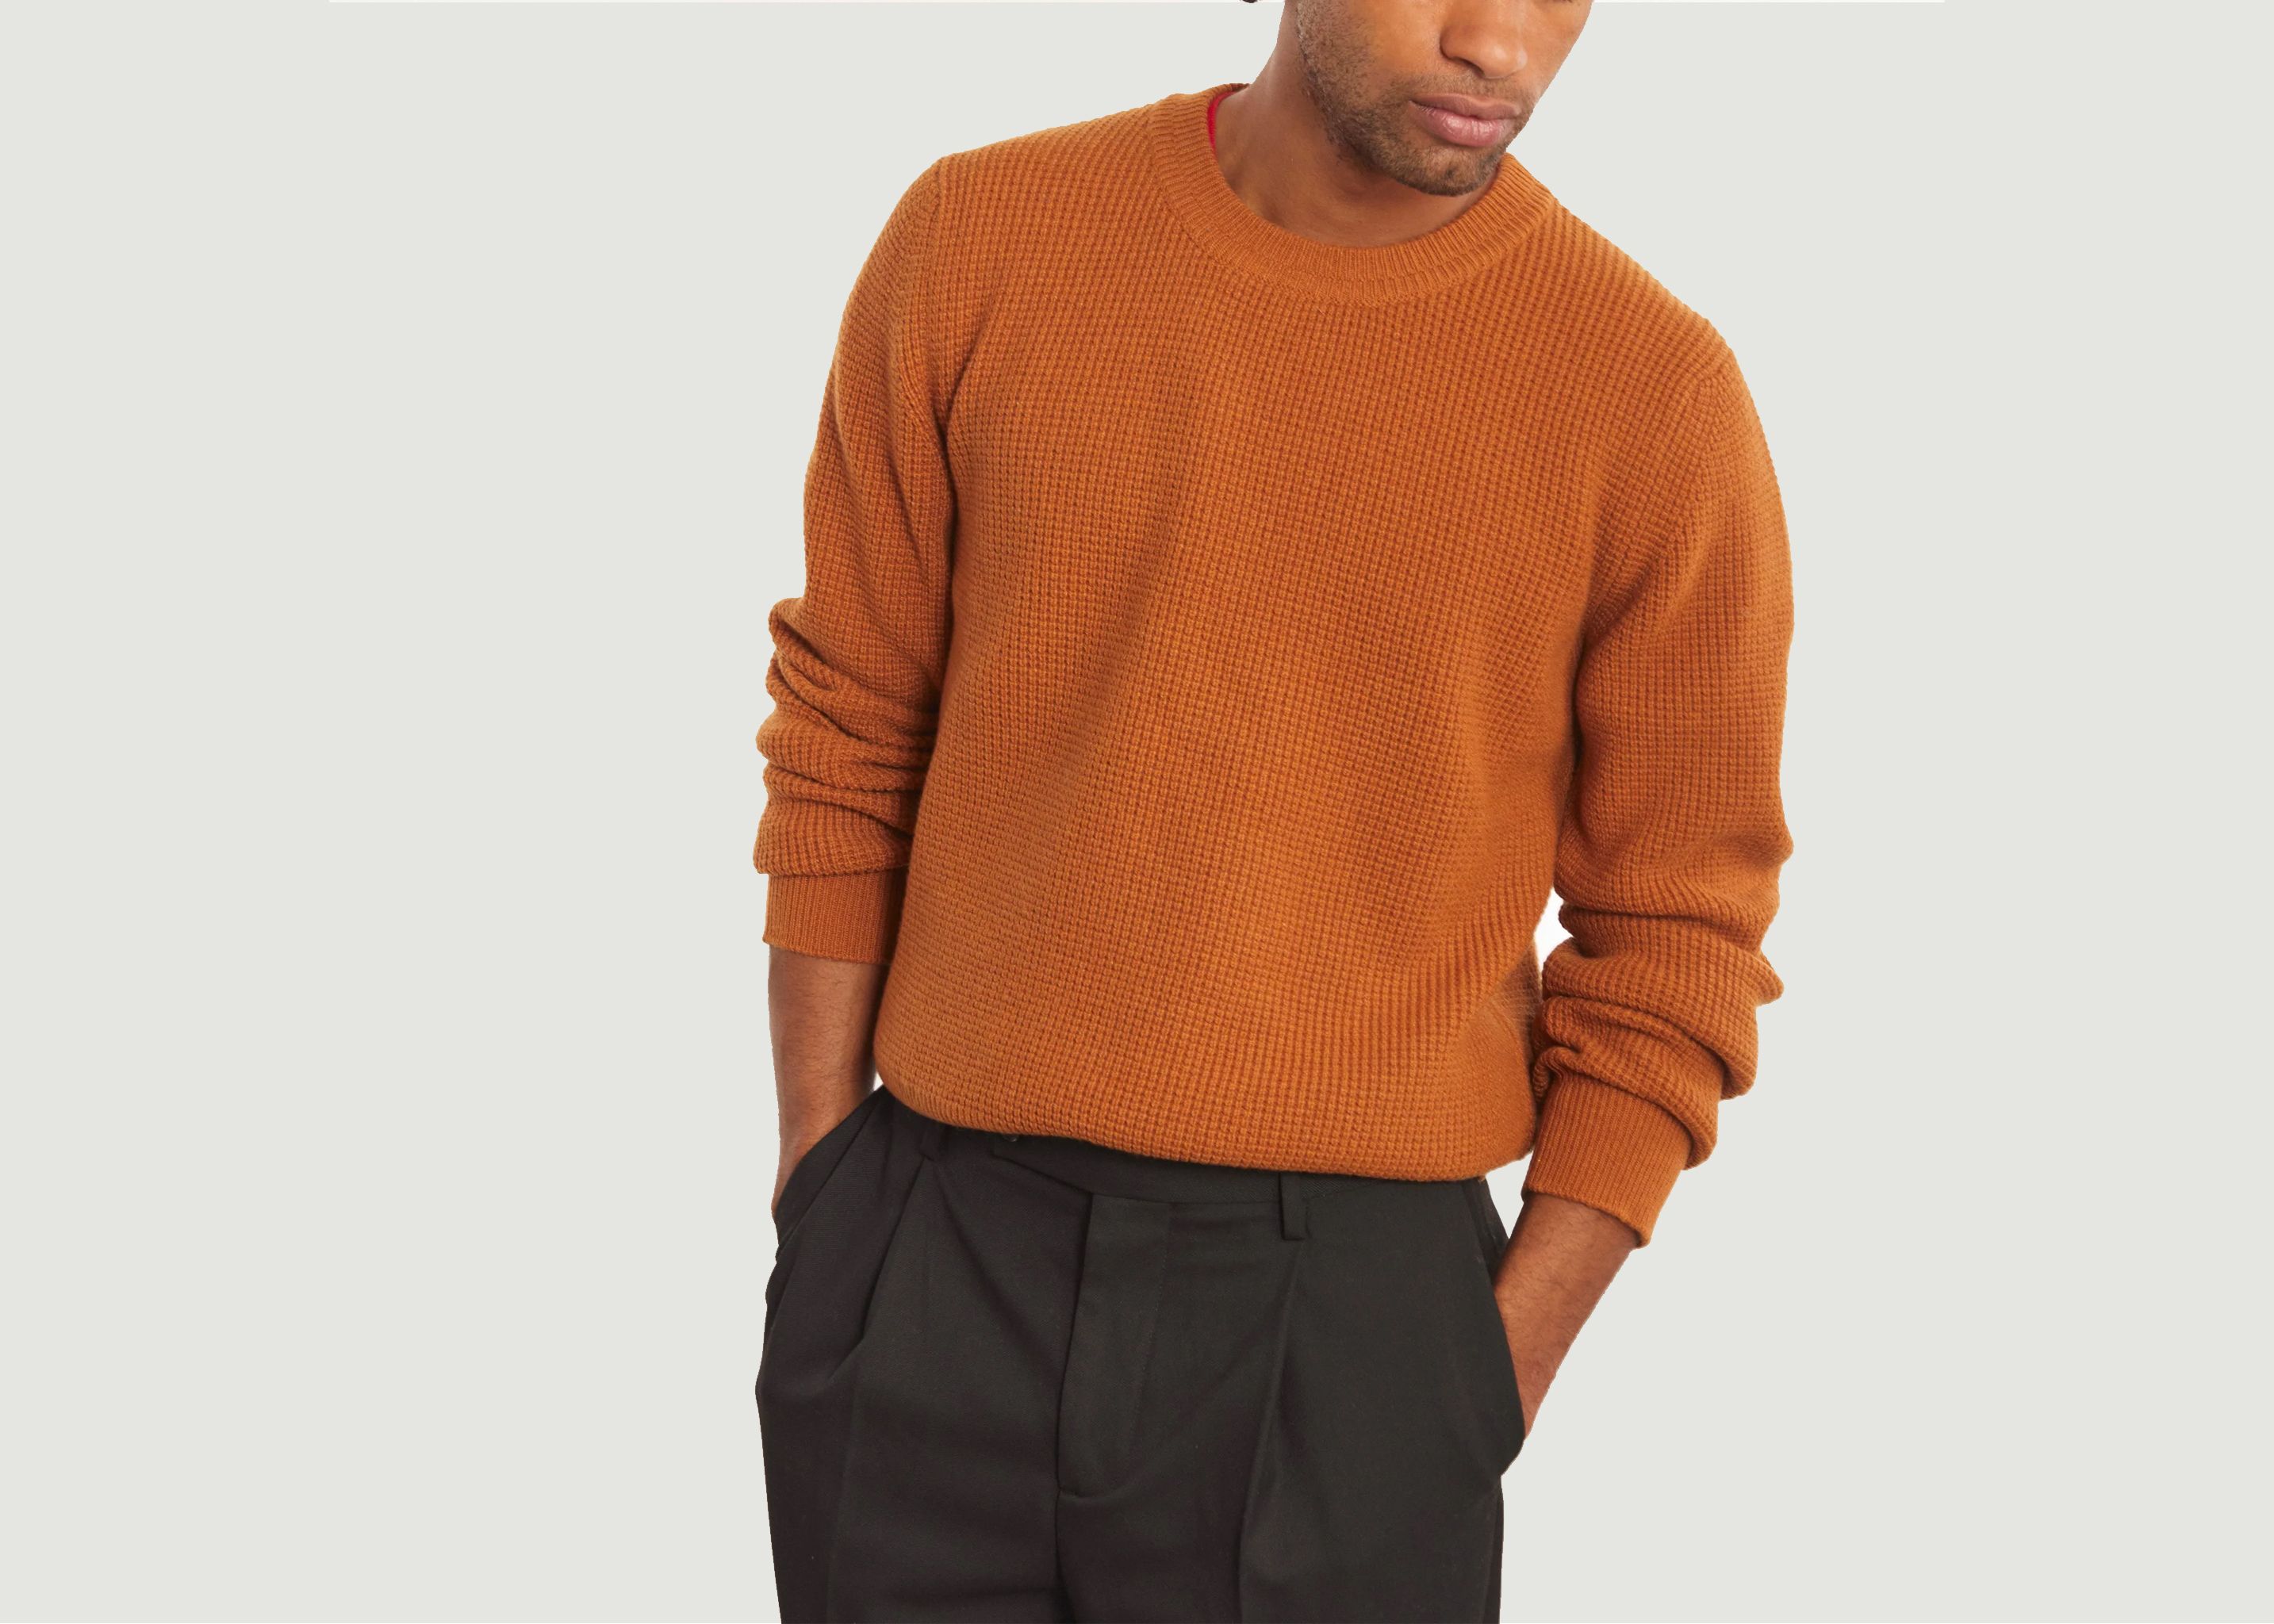 Wool & cashmere round neck jumper  - Tricot